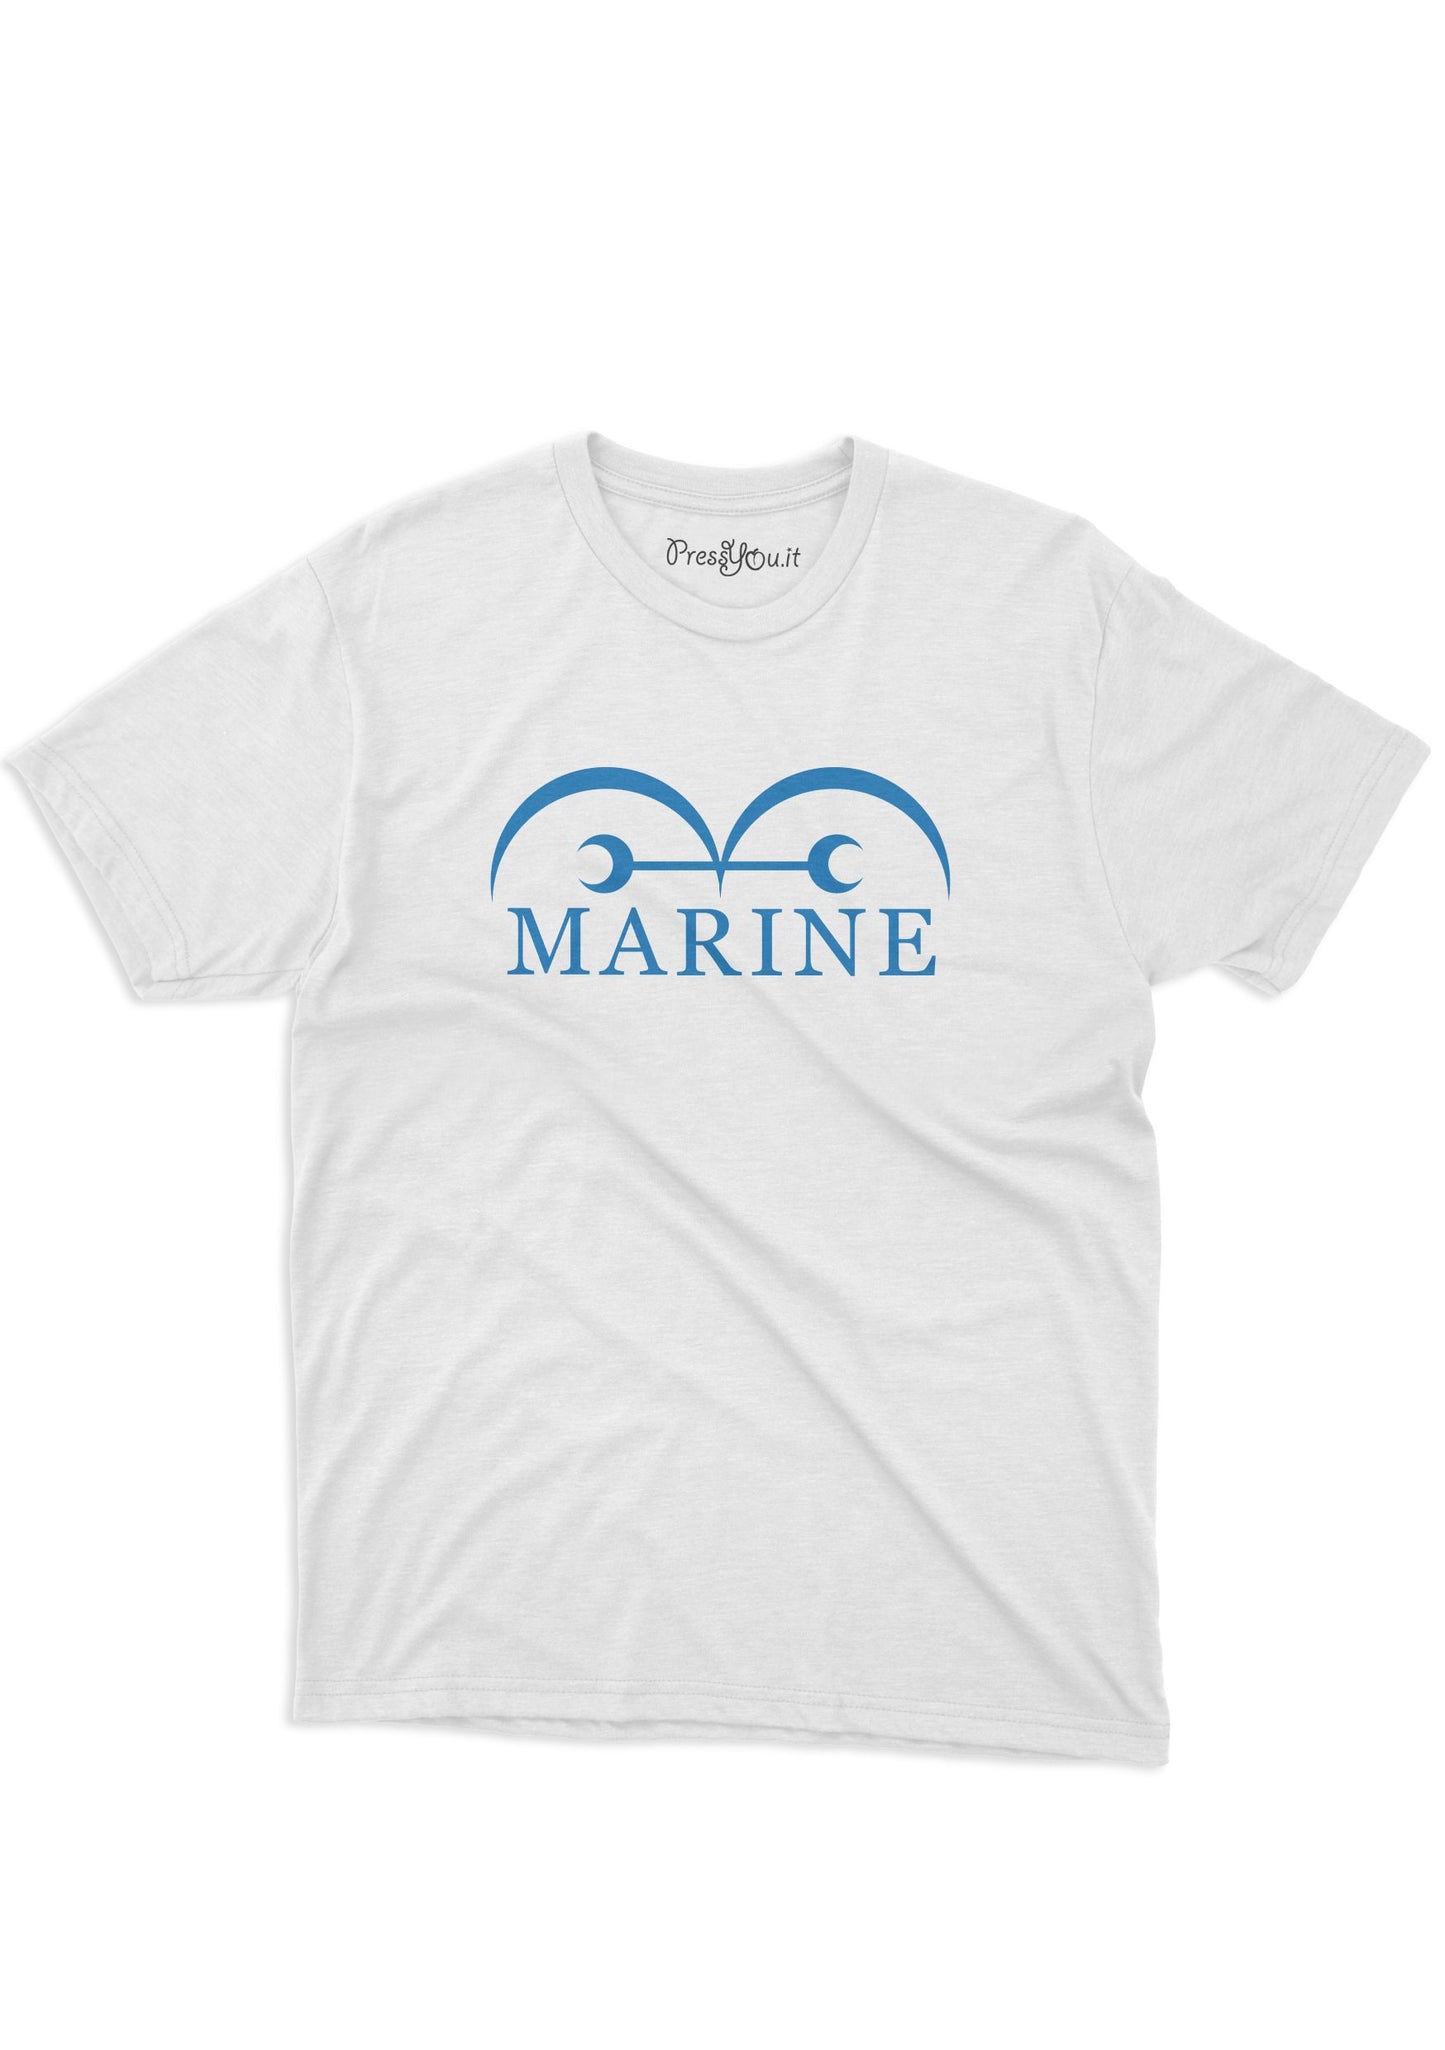 maglietta t-shirt- marina marine ammiraglio fronte retro oro manga governo mondiale